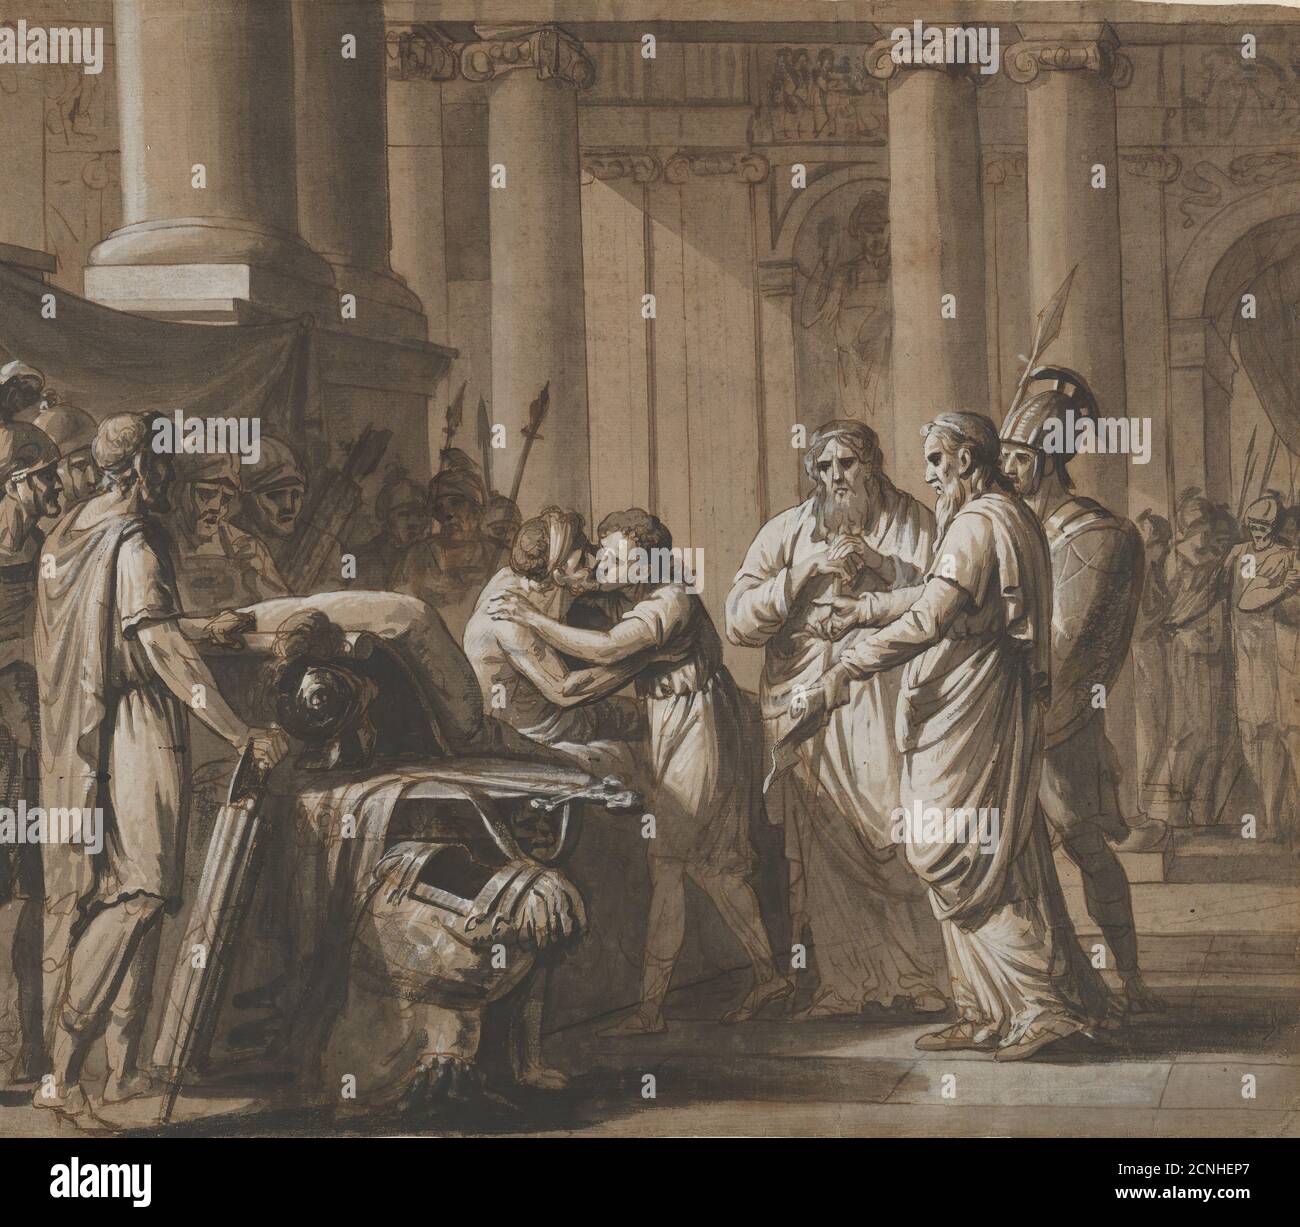 Scène de l'histoire romaine, représentant une jeunesse recevant l'armure d'un homme mourant (Scipio Africanus et son fils?), fin du XVIIIe-milieu du XIXe siècle. Banque D'Images